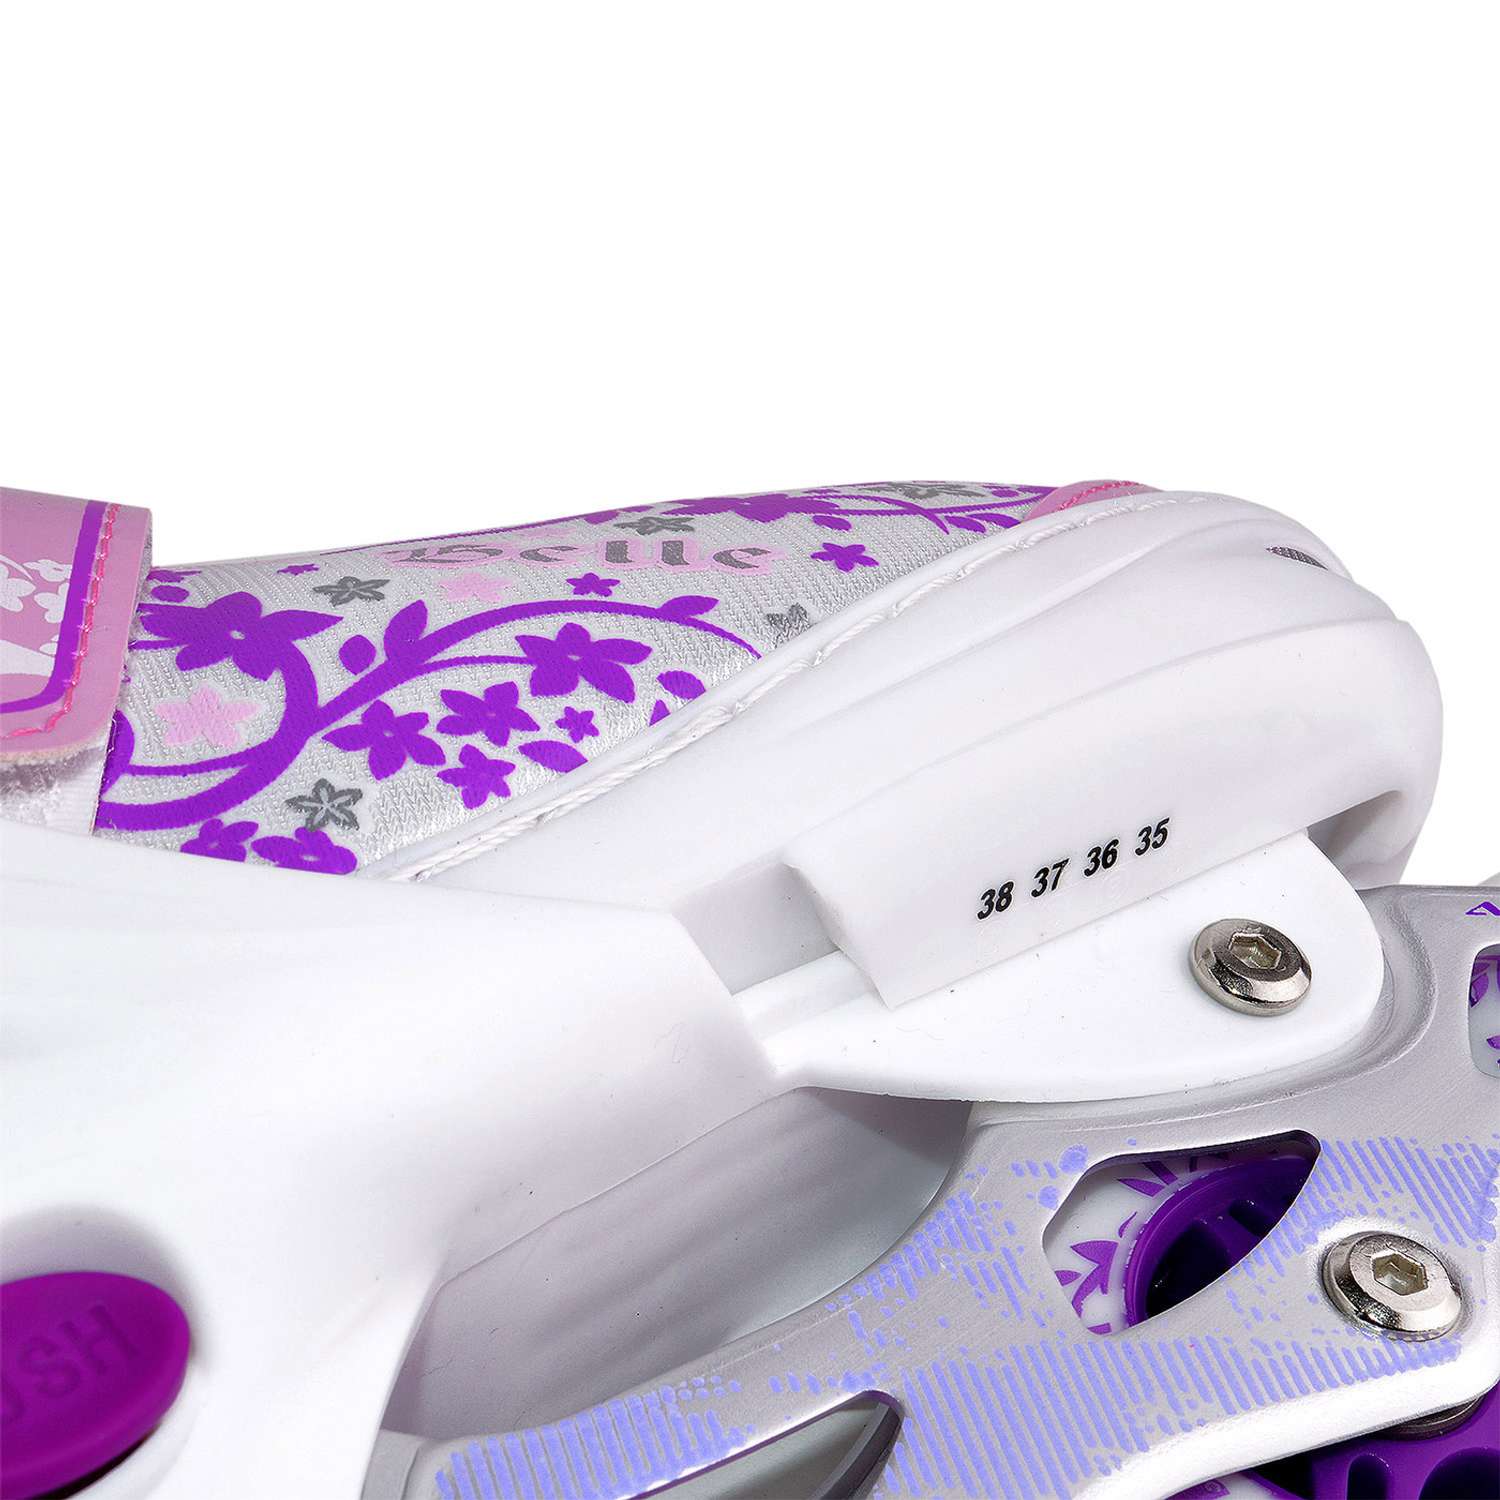 Раздвижные роликовые коньки Alpha Caprice BELL violet размер L 39-42 - фото 5